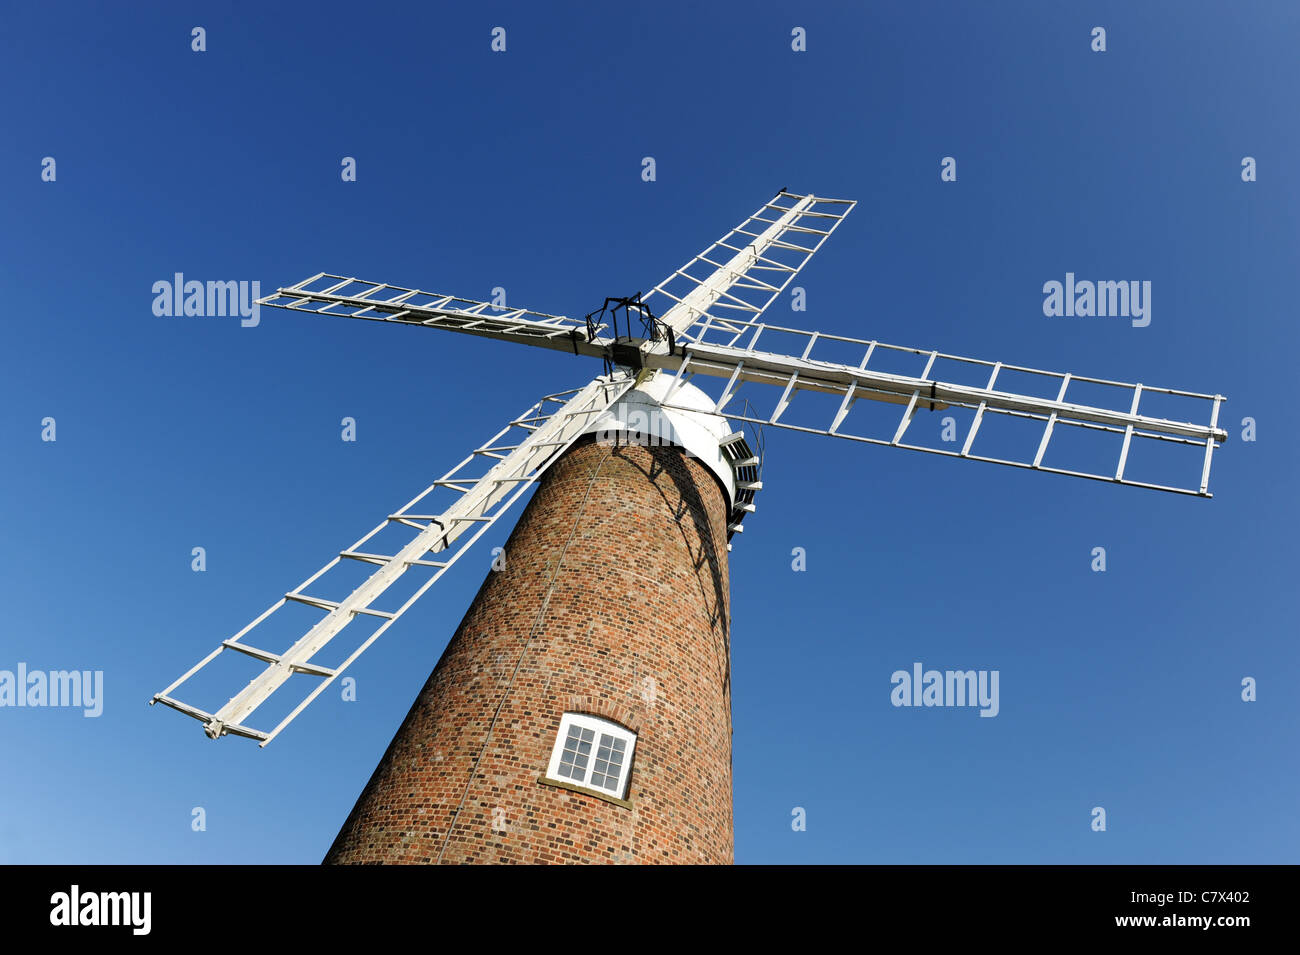 Chiseldon windmill at Windmill Hill Business Park Swindon Wiltshire England UK Stock Photo